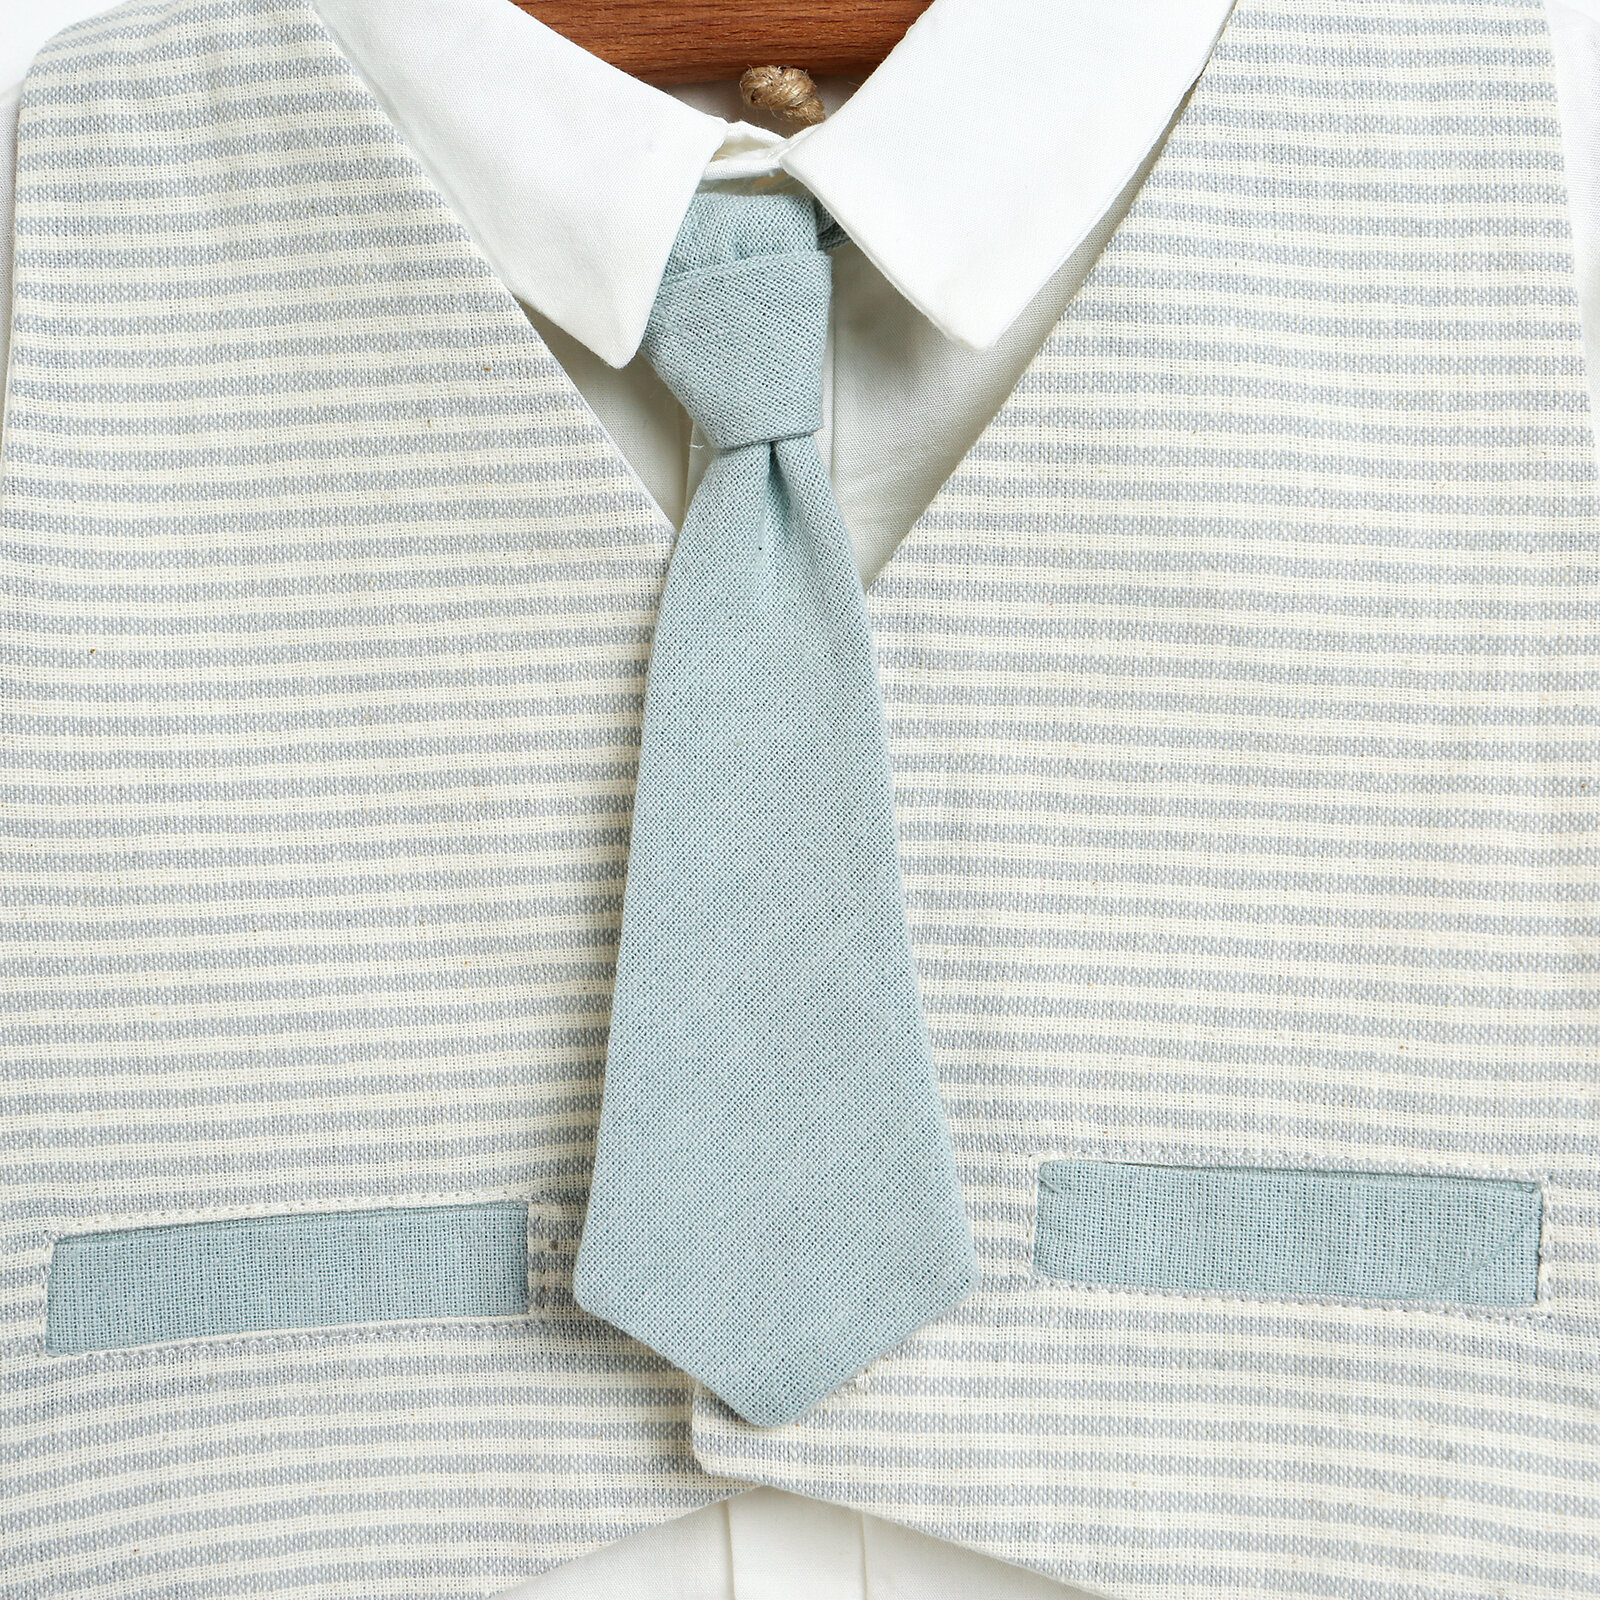 Basic Erkek Bebek Düğmeli Gömlek-Pantolon-Yelek 3lü Şık Takım Erkek Bebek